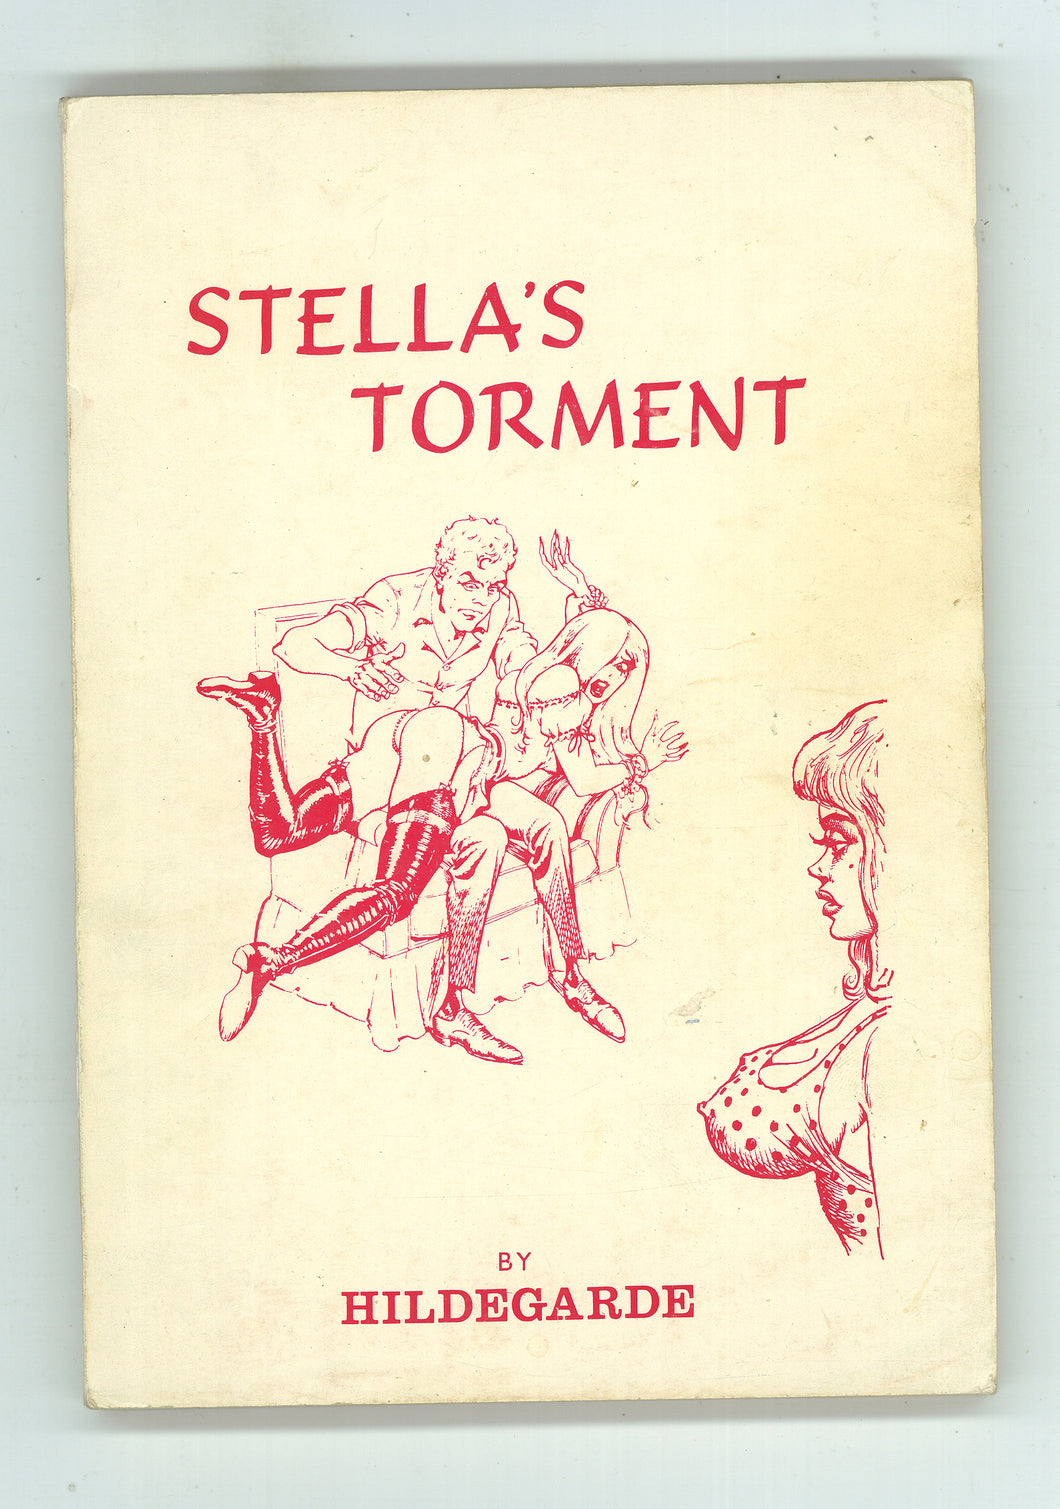 Stella's Torment